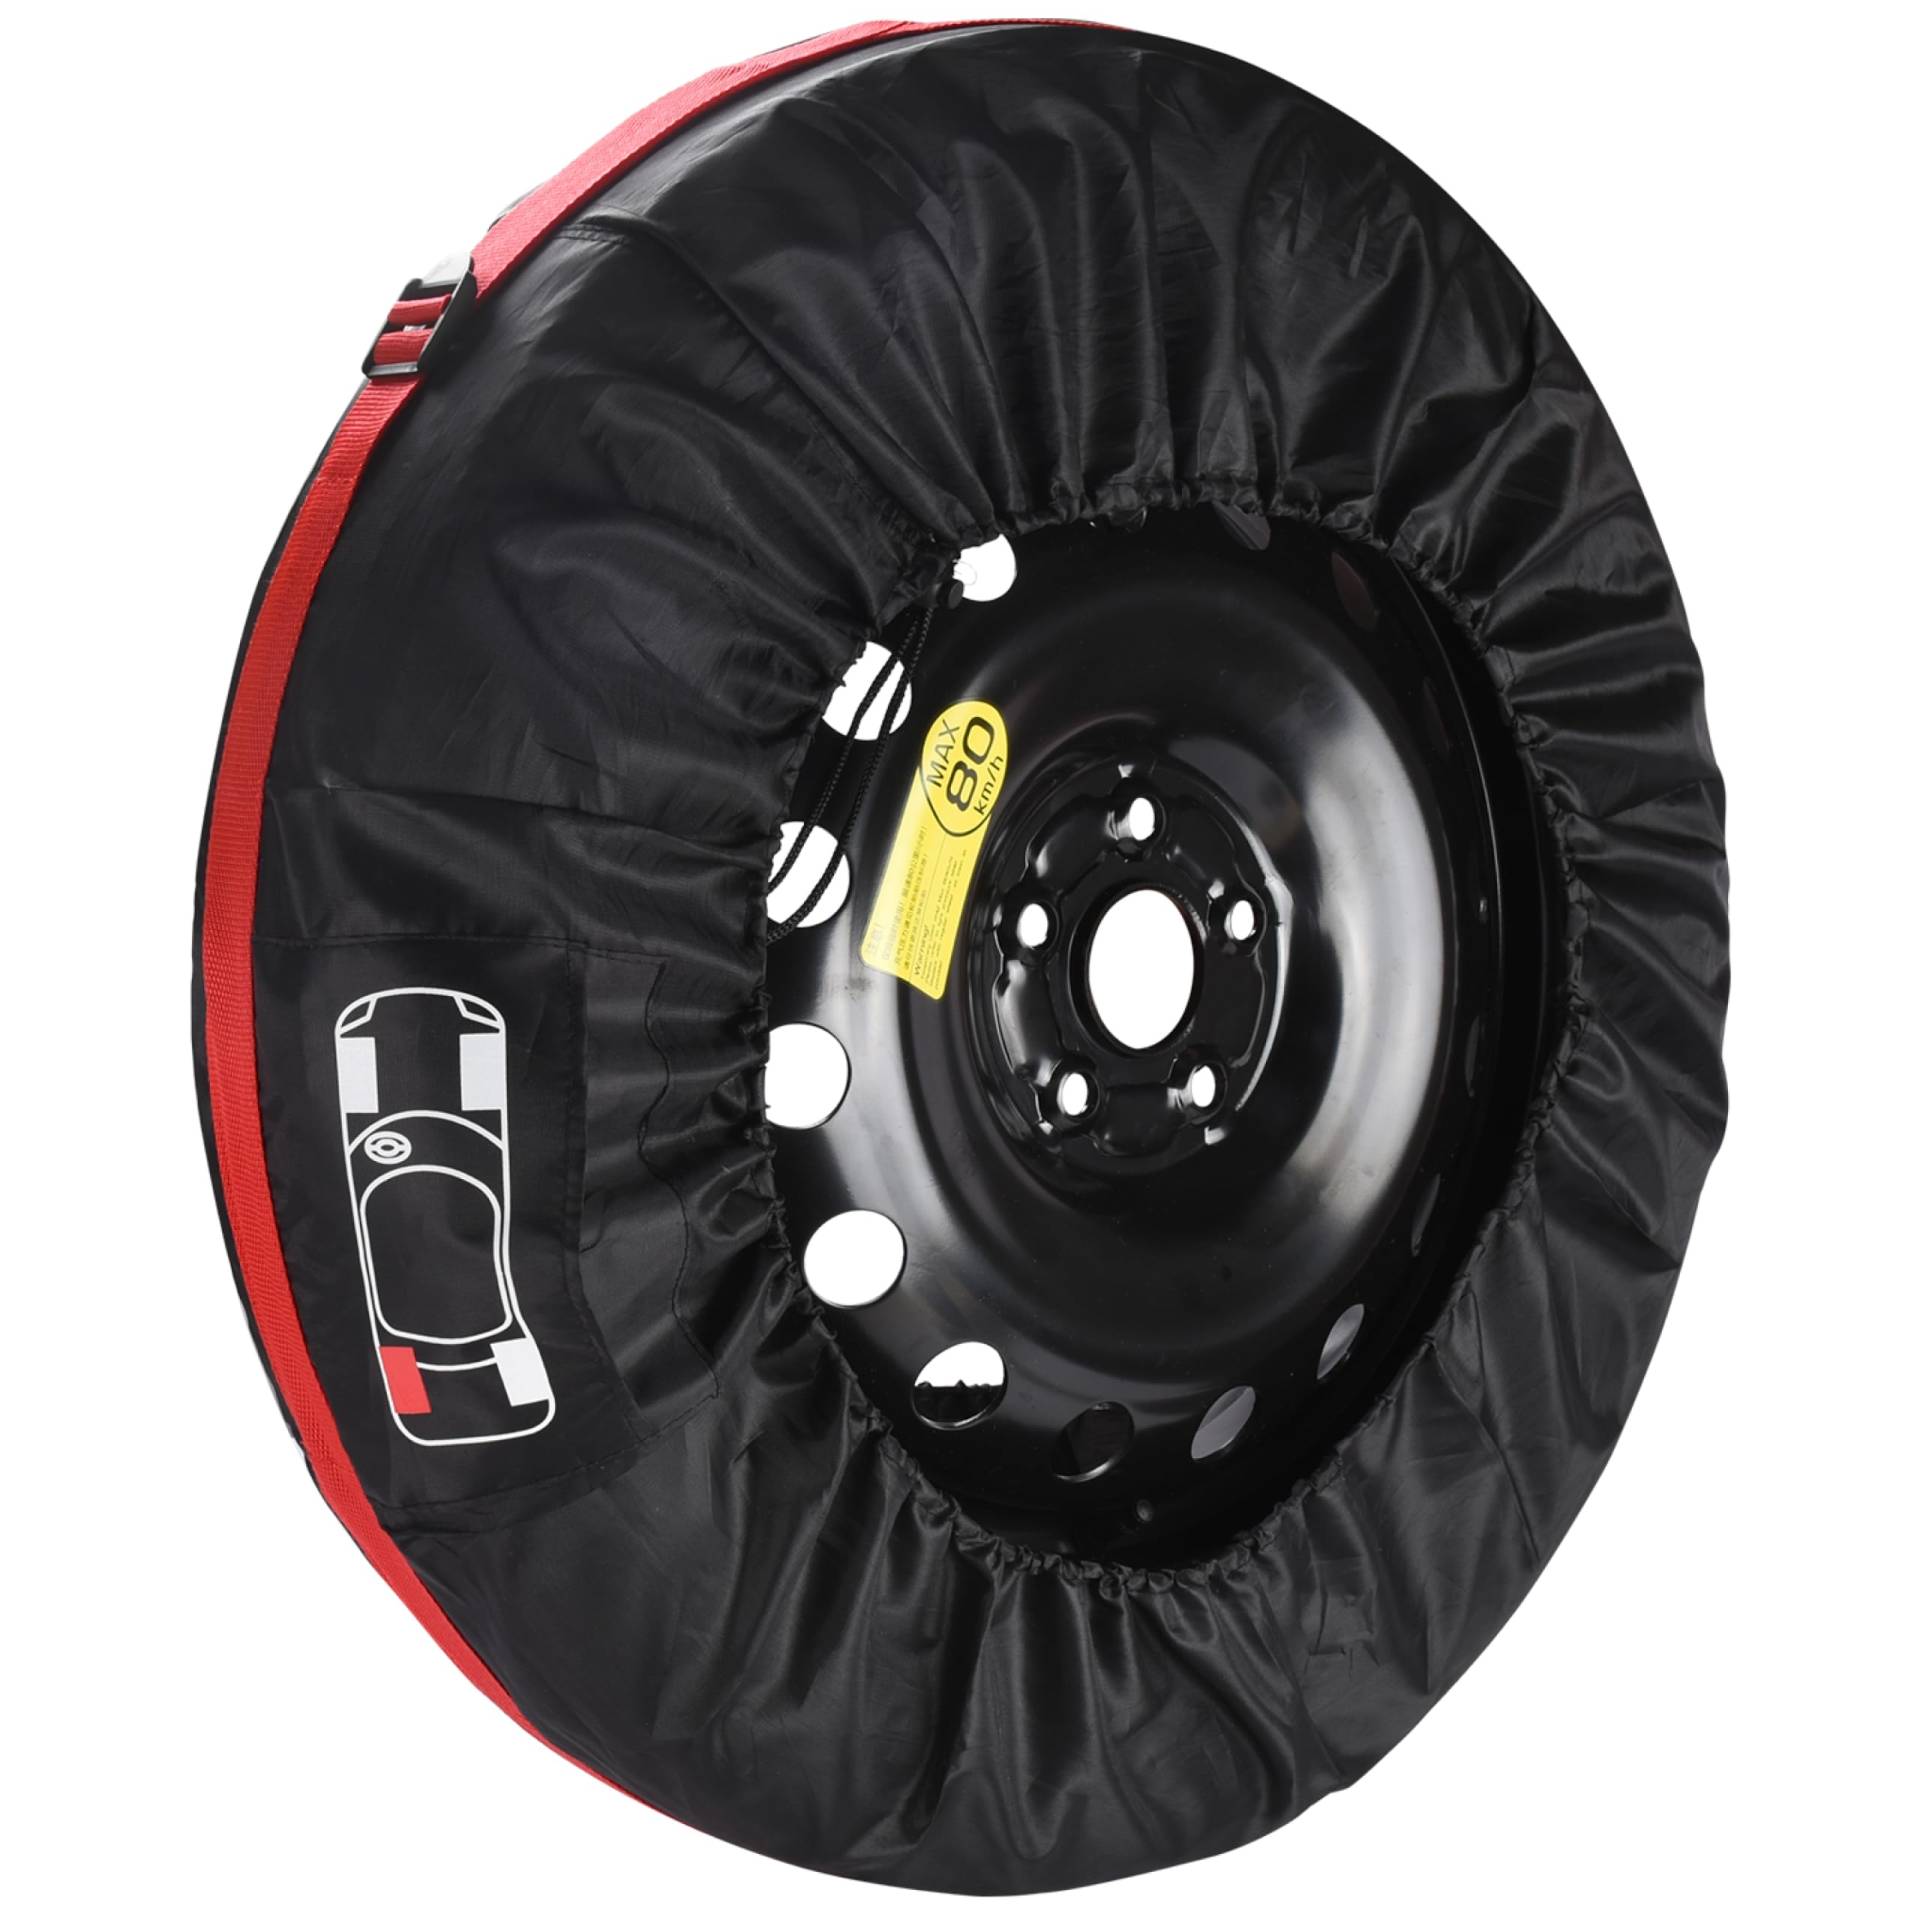 Boulder Tools Universal-Reifentasche Reifenabdeckung - Reifentüten, Autoreifen Aufbewahrung - Schutzhülle für Reifen Winter und Sommerautoersatz von Boulder Tools